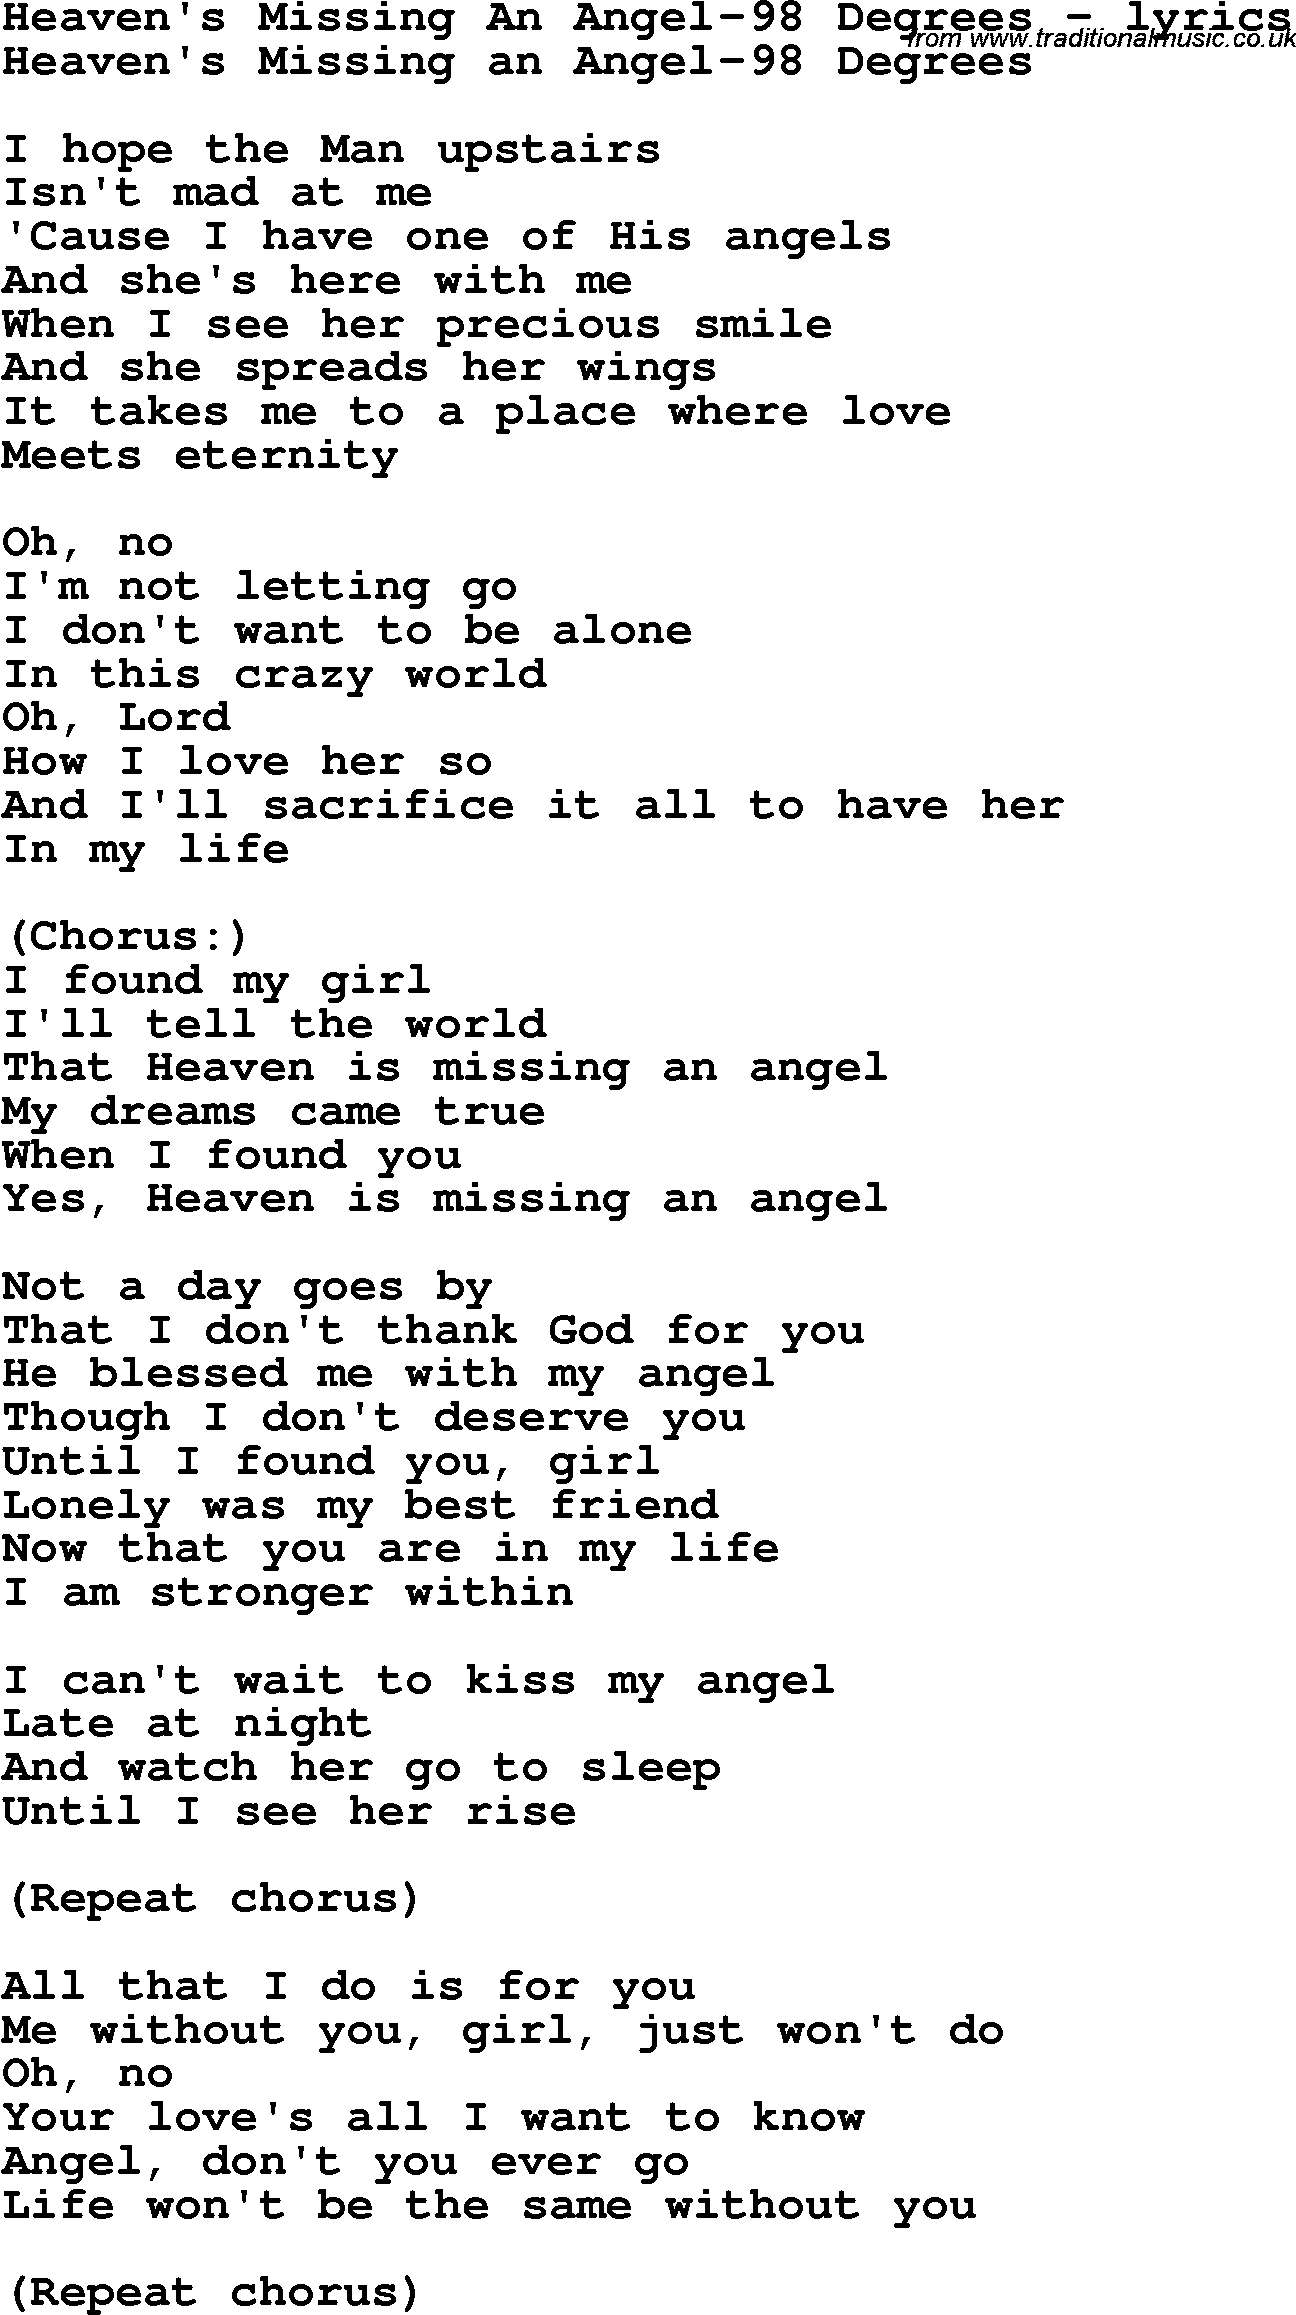 Love Song Lyrics for: Heaven's Missing An Angel-98 Degrees